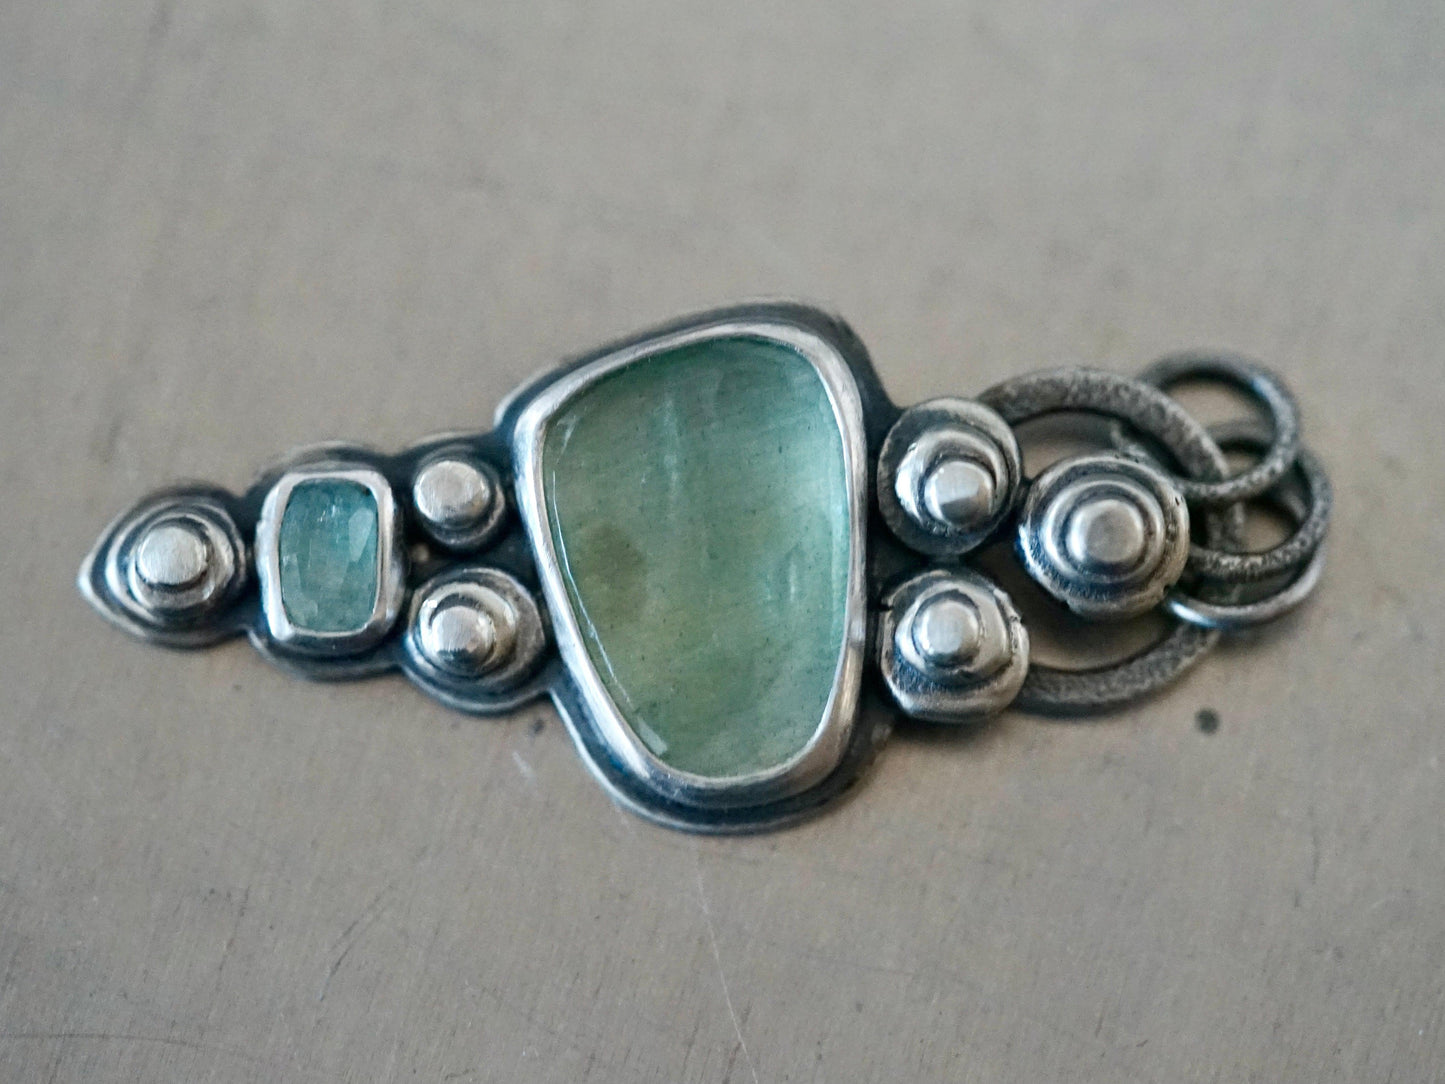 Glacier stream aquamarine and sterling silver pendant